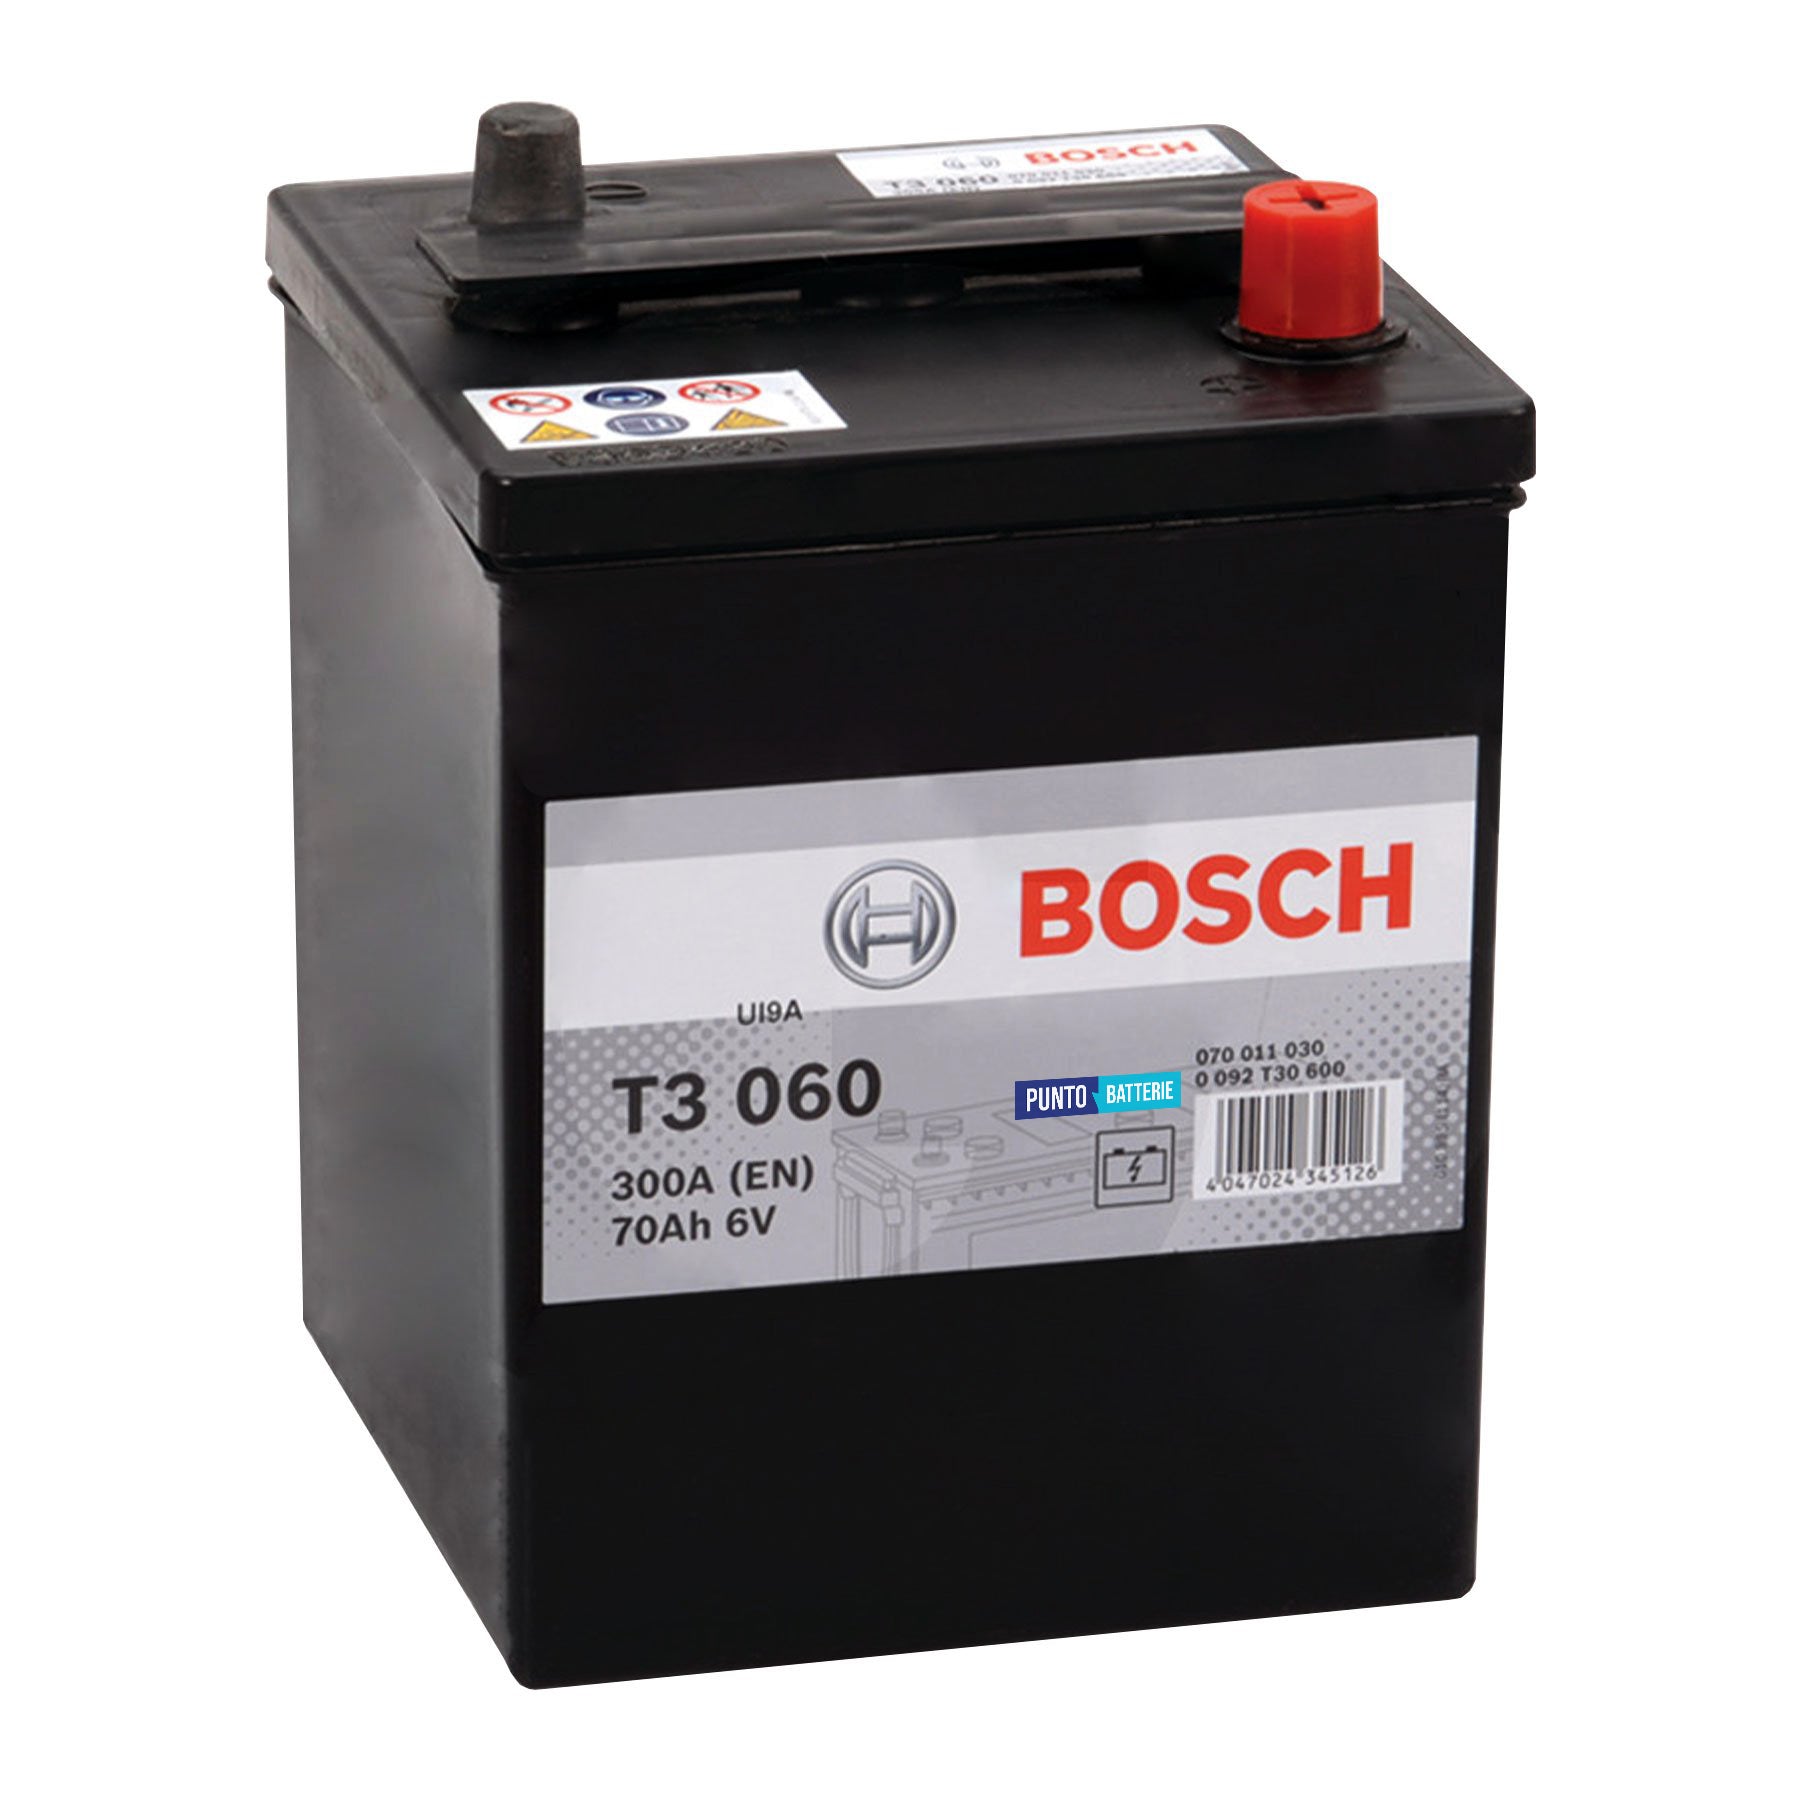 Batteria originale Bosch T3 T3060, dimensioni 175 x 167 x 220, polo positivo a destra, 6 volt, 70 amperora, 300 ampere. Batteria per camion e veicoli pesanti.